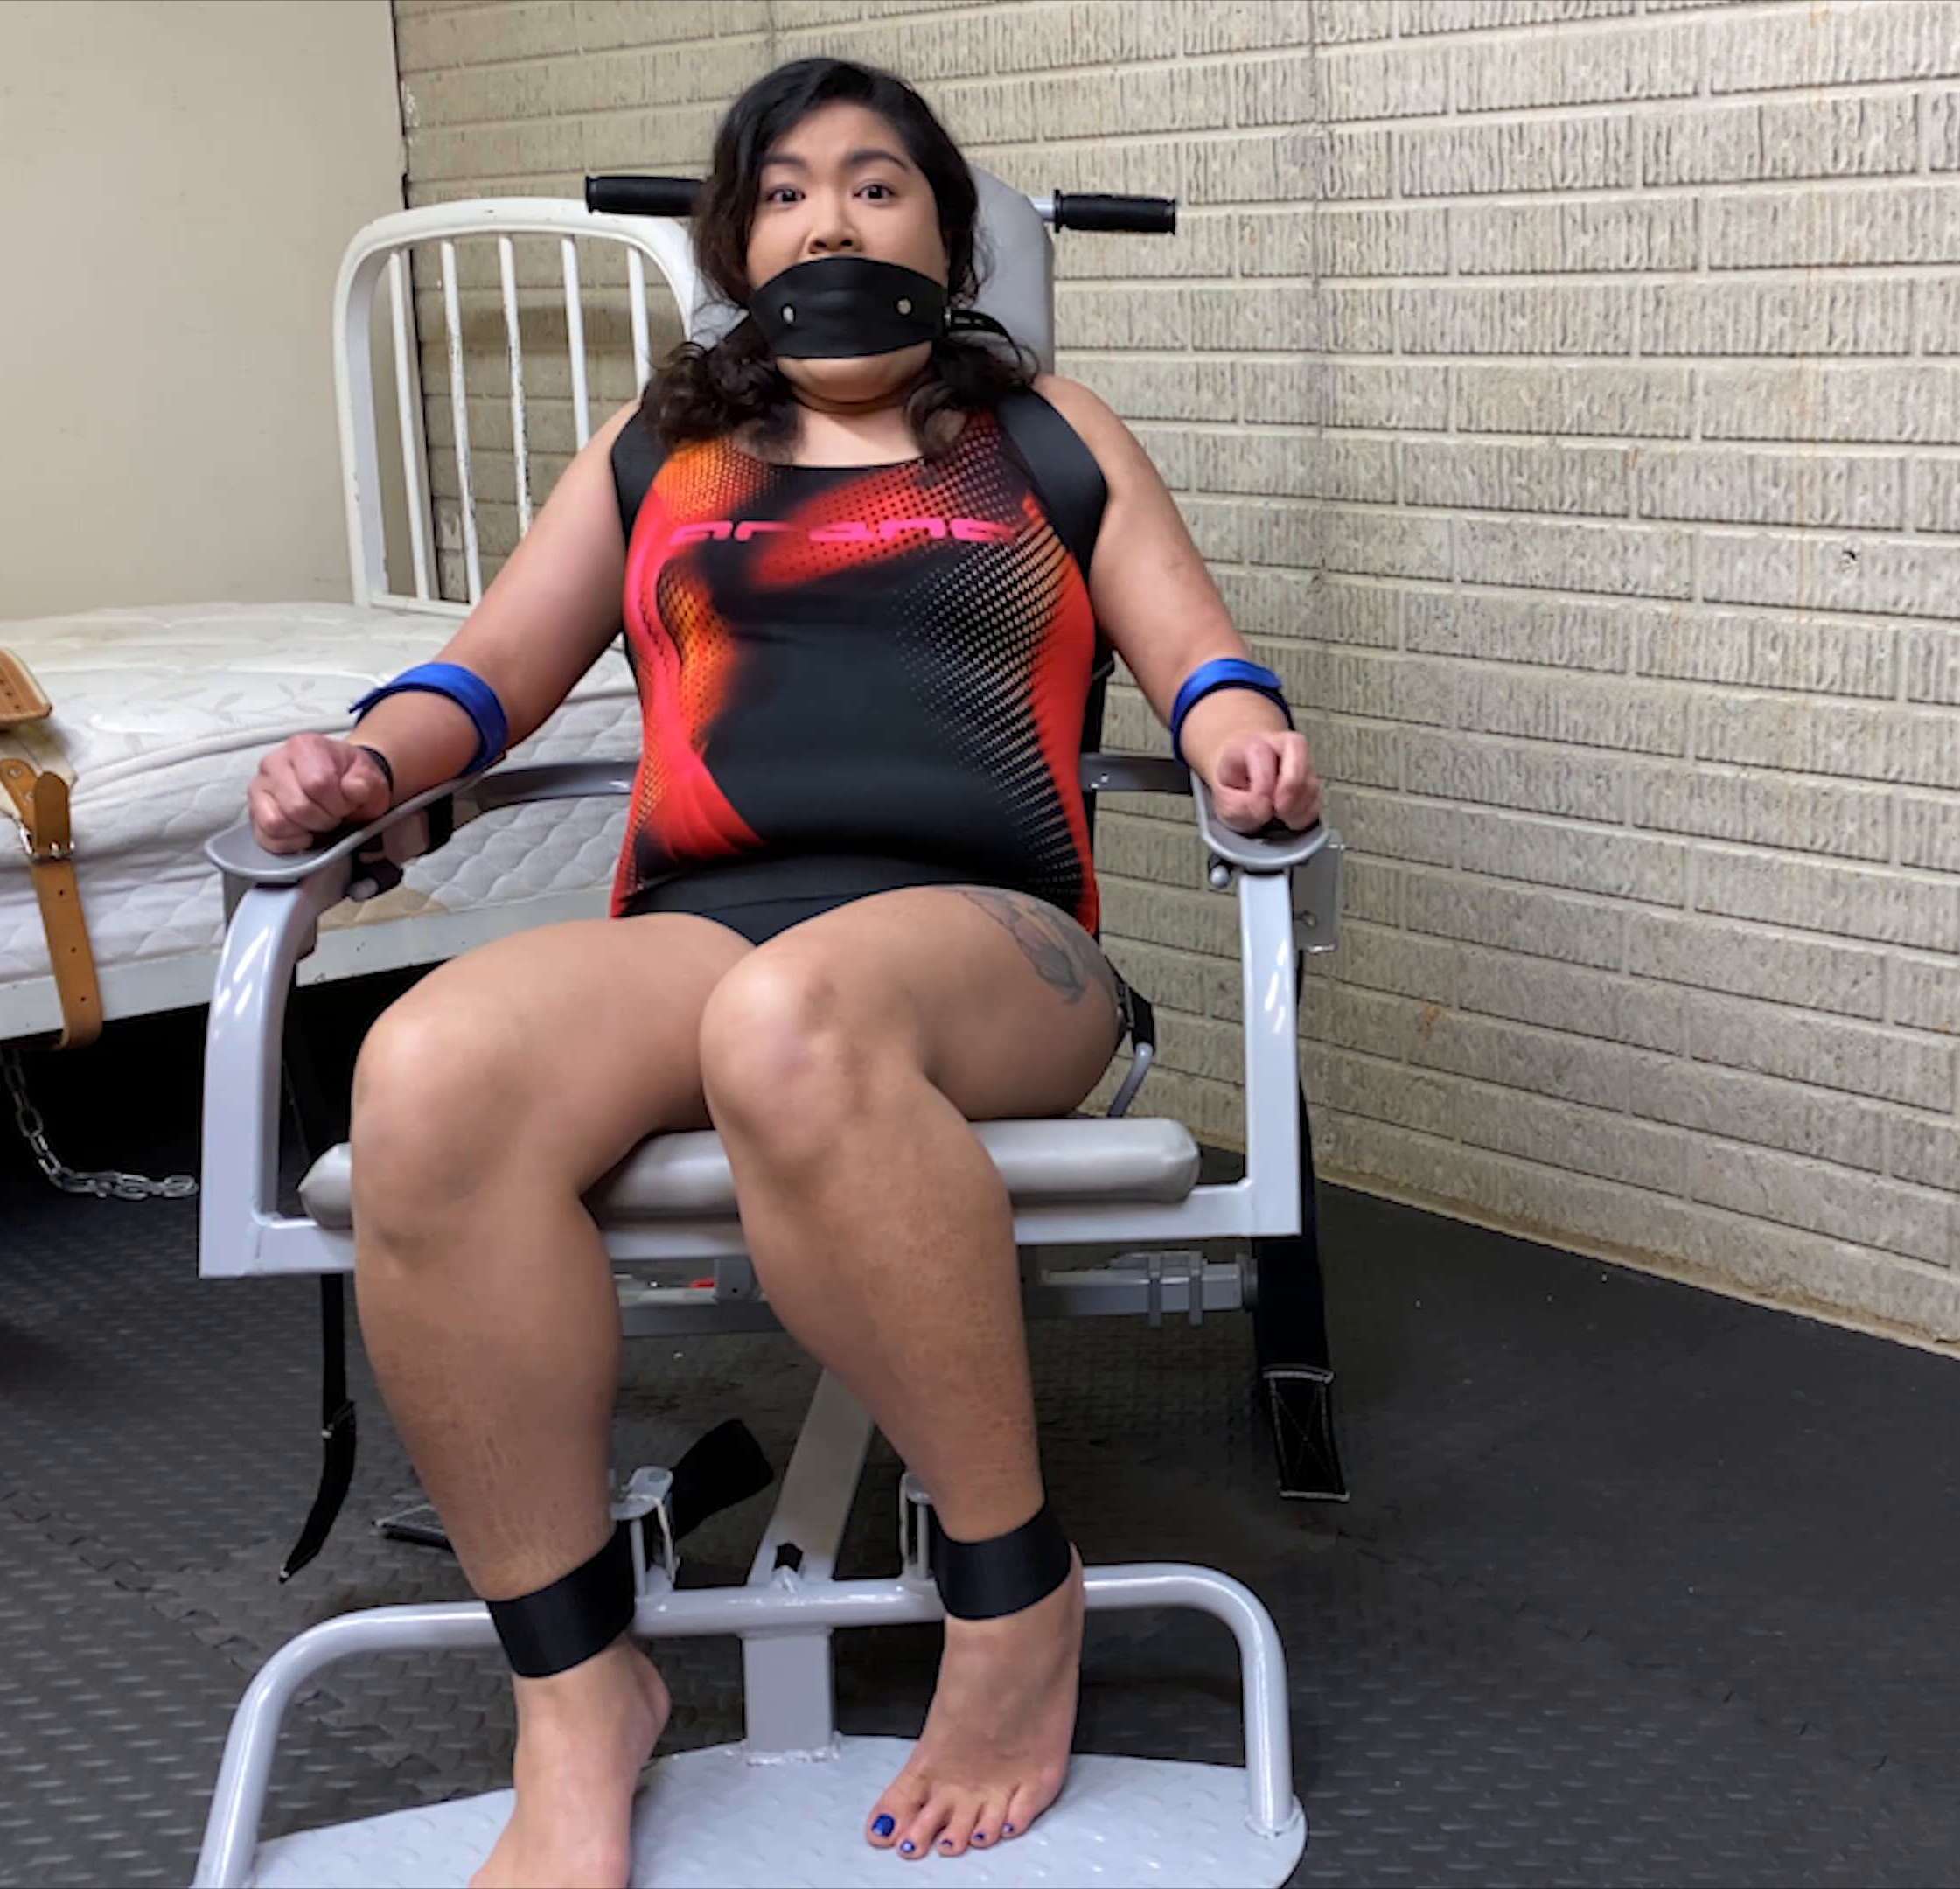 Female Bondahe - Predicament Bondage - Kim Chi sits down restraint chair challenge - Swimwearbondage